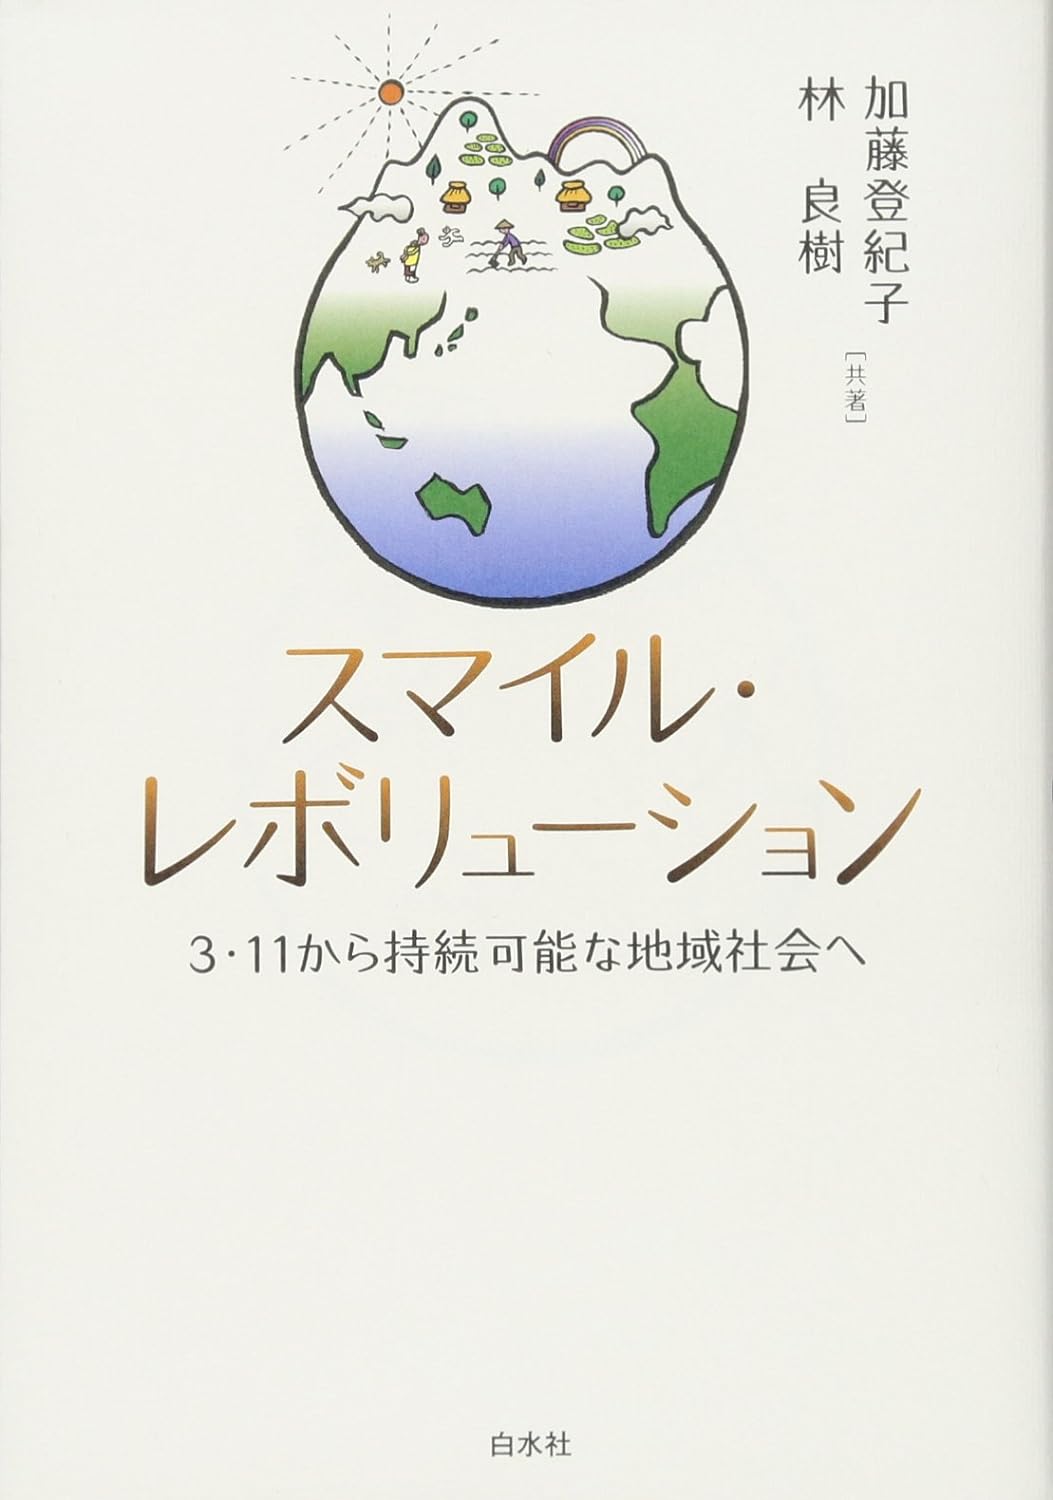 『スマイル・レボリューション ─ 3・11から持続可能な地域社会へ』加藤 登紀子 (著), 林 良樹 (著)